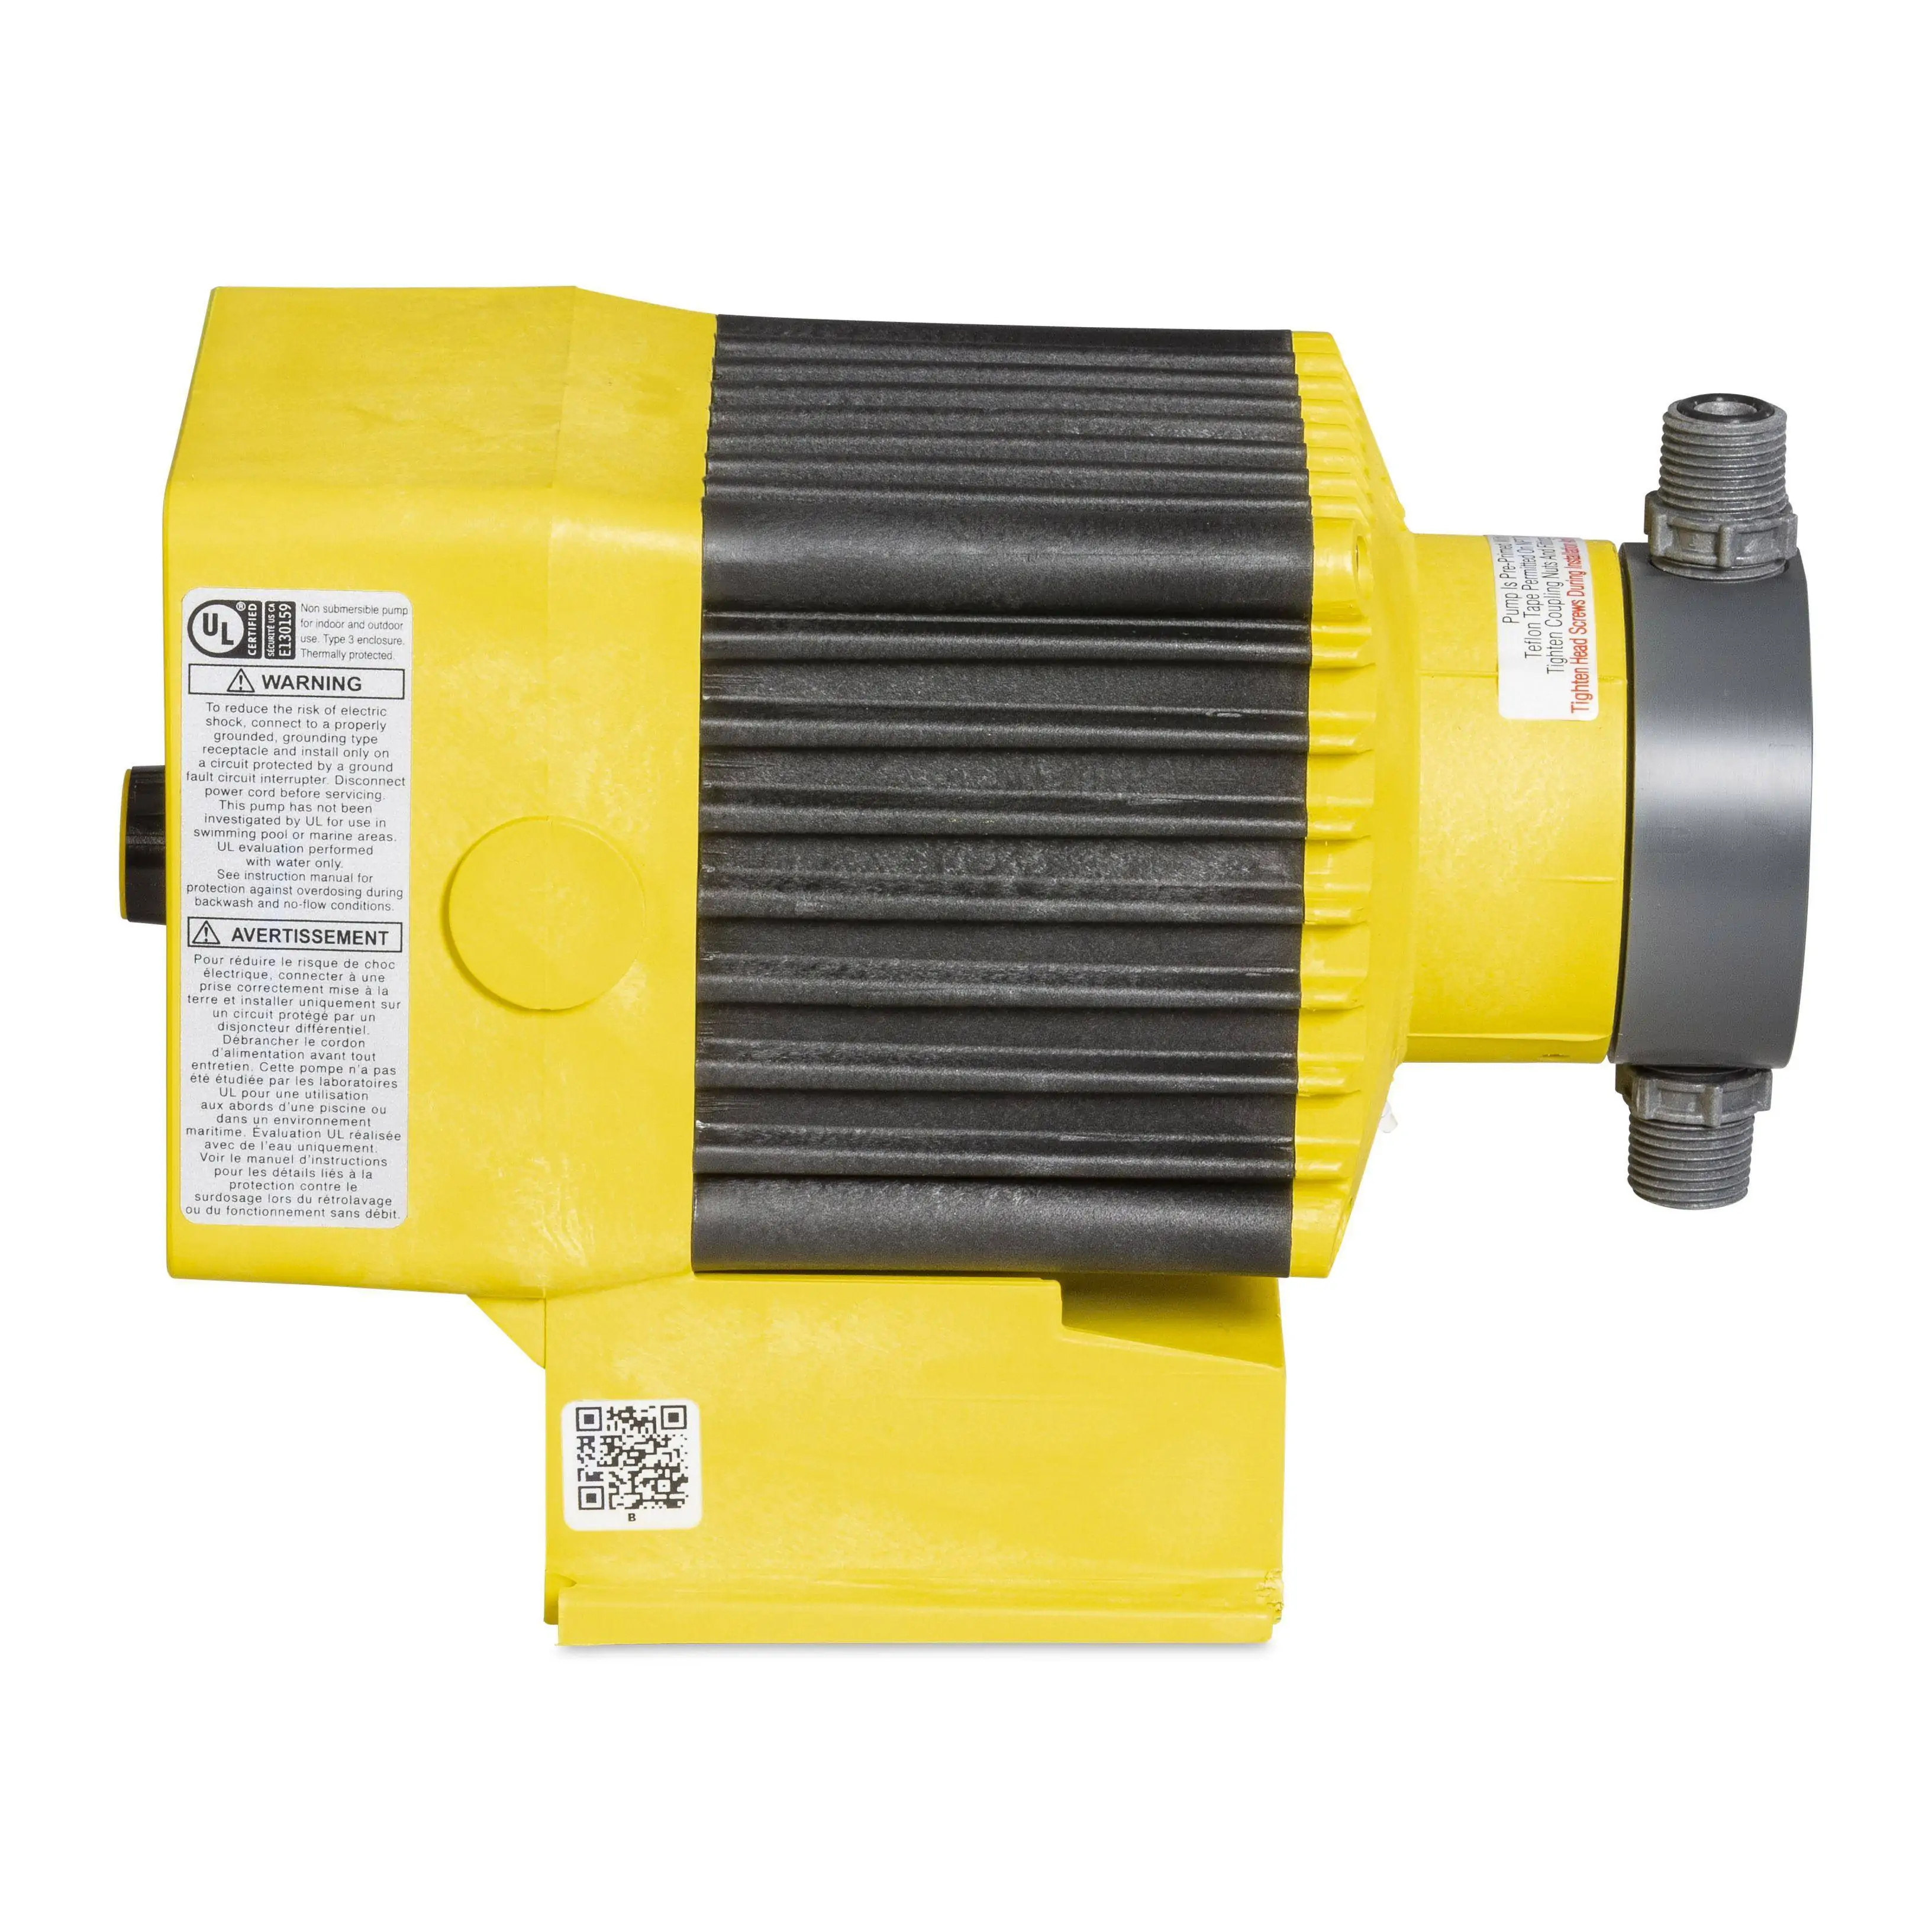 4-20mA Control PVC LMI Metering Pump C931-26S 8 GPH 60 psi 